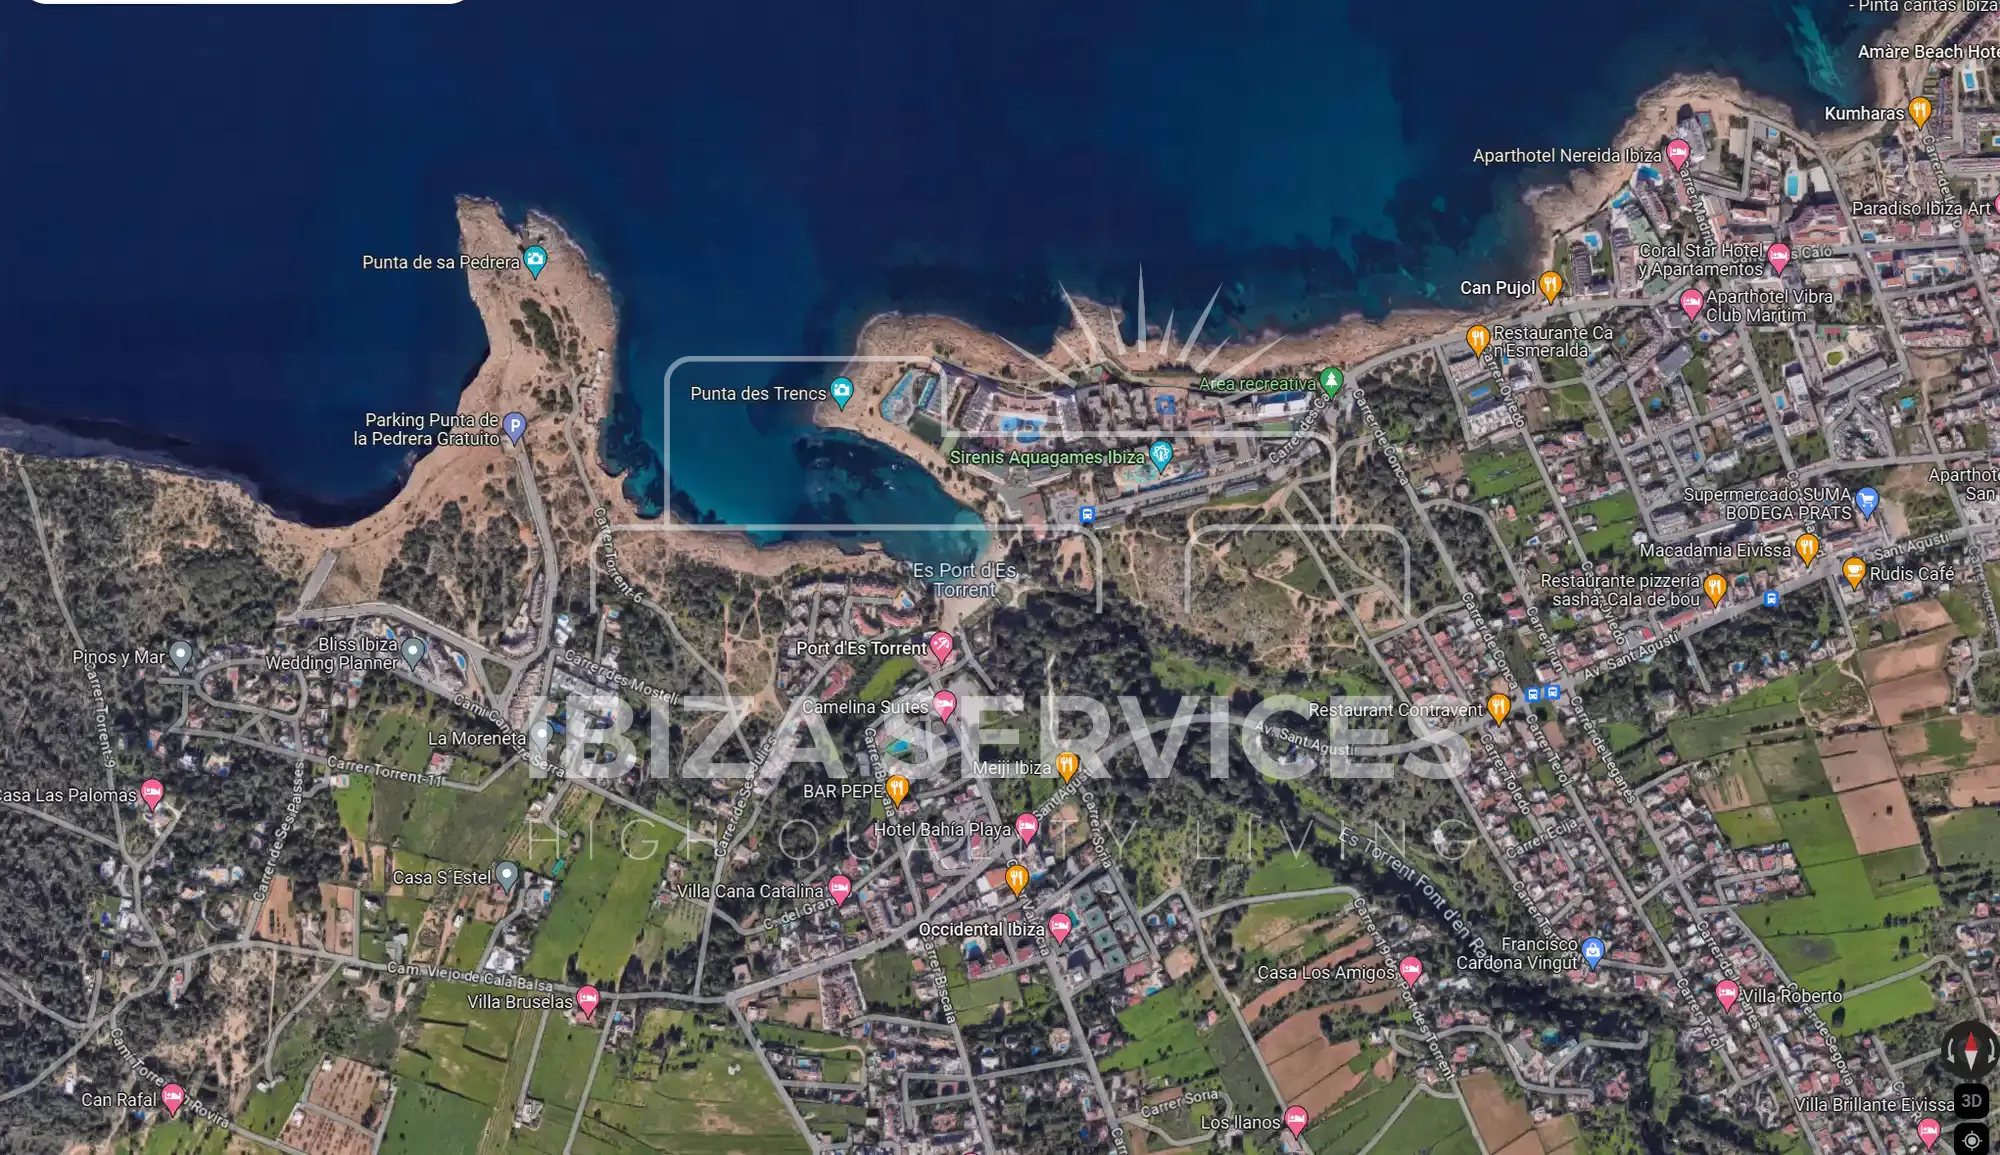 Oportunidad Única de Desarrollo Inmobiliario en Port des Torrents, Ibiza